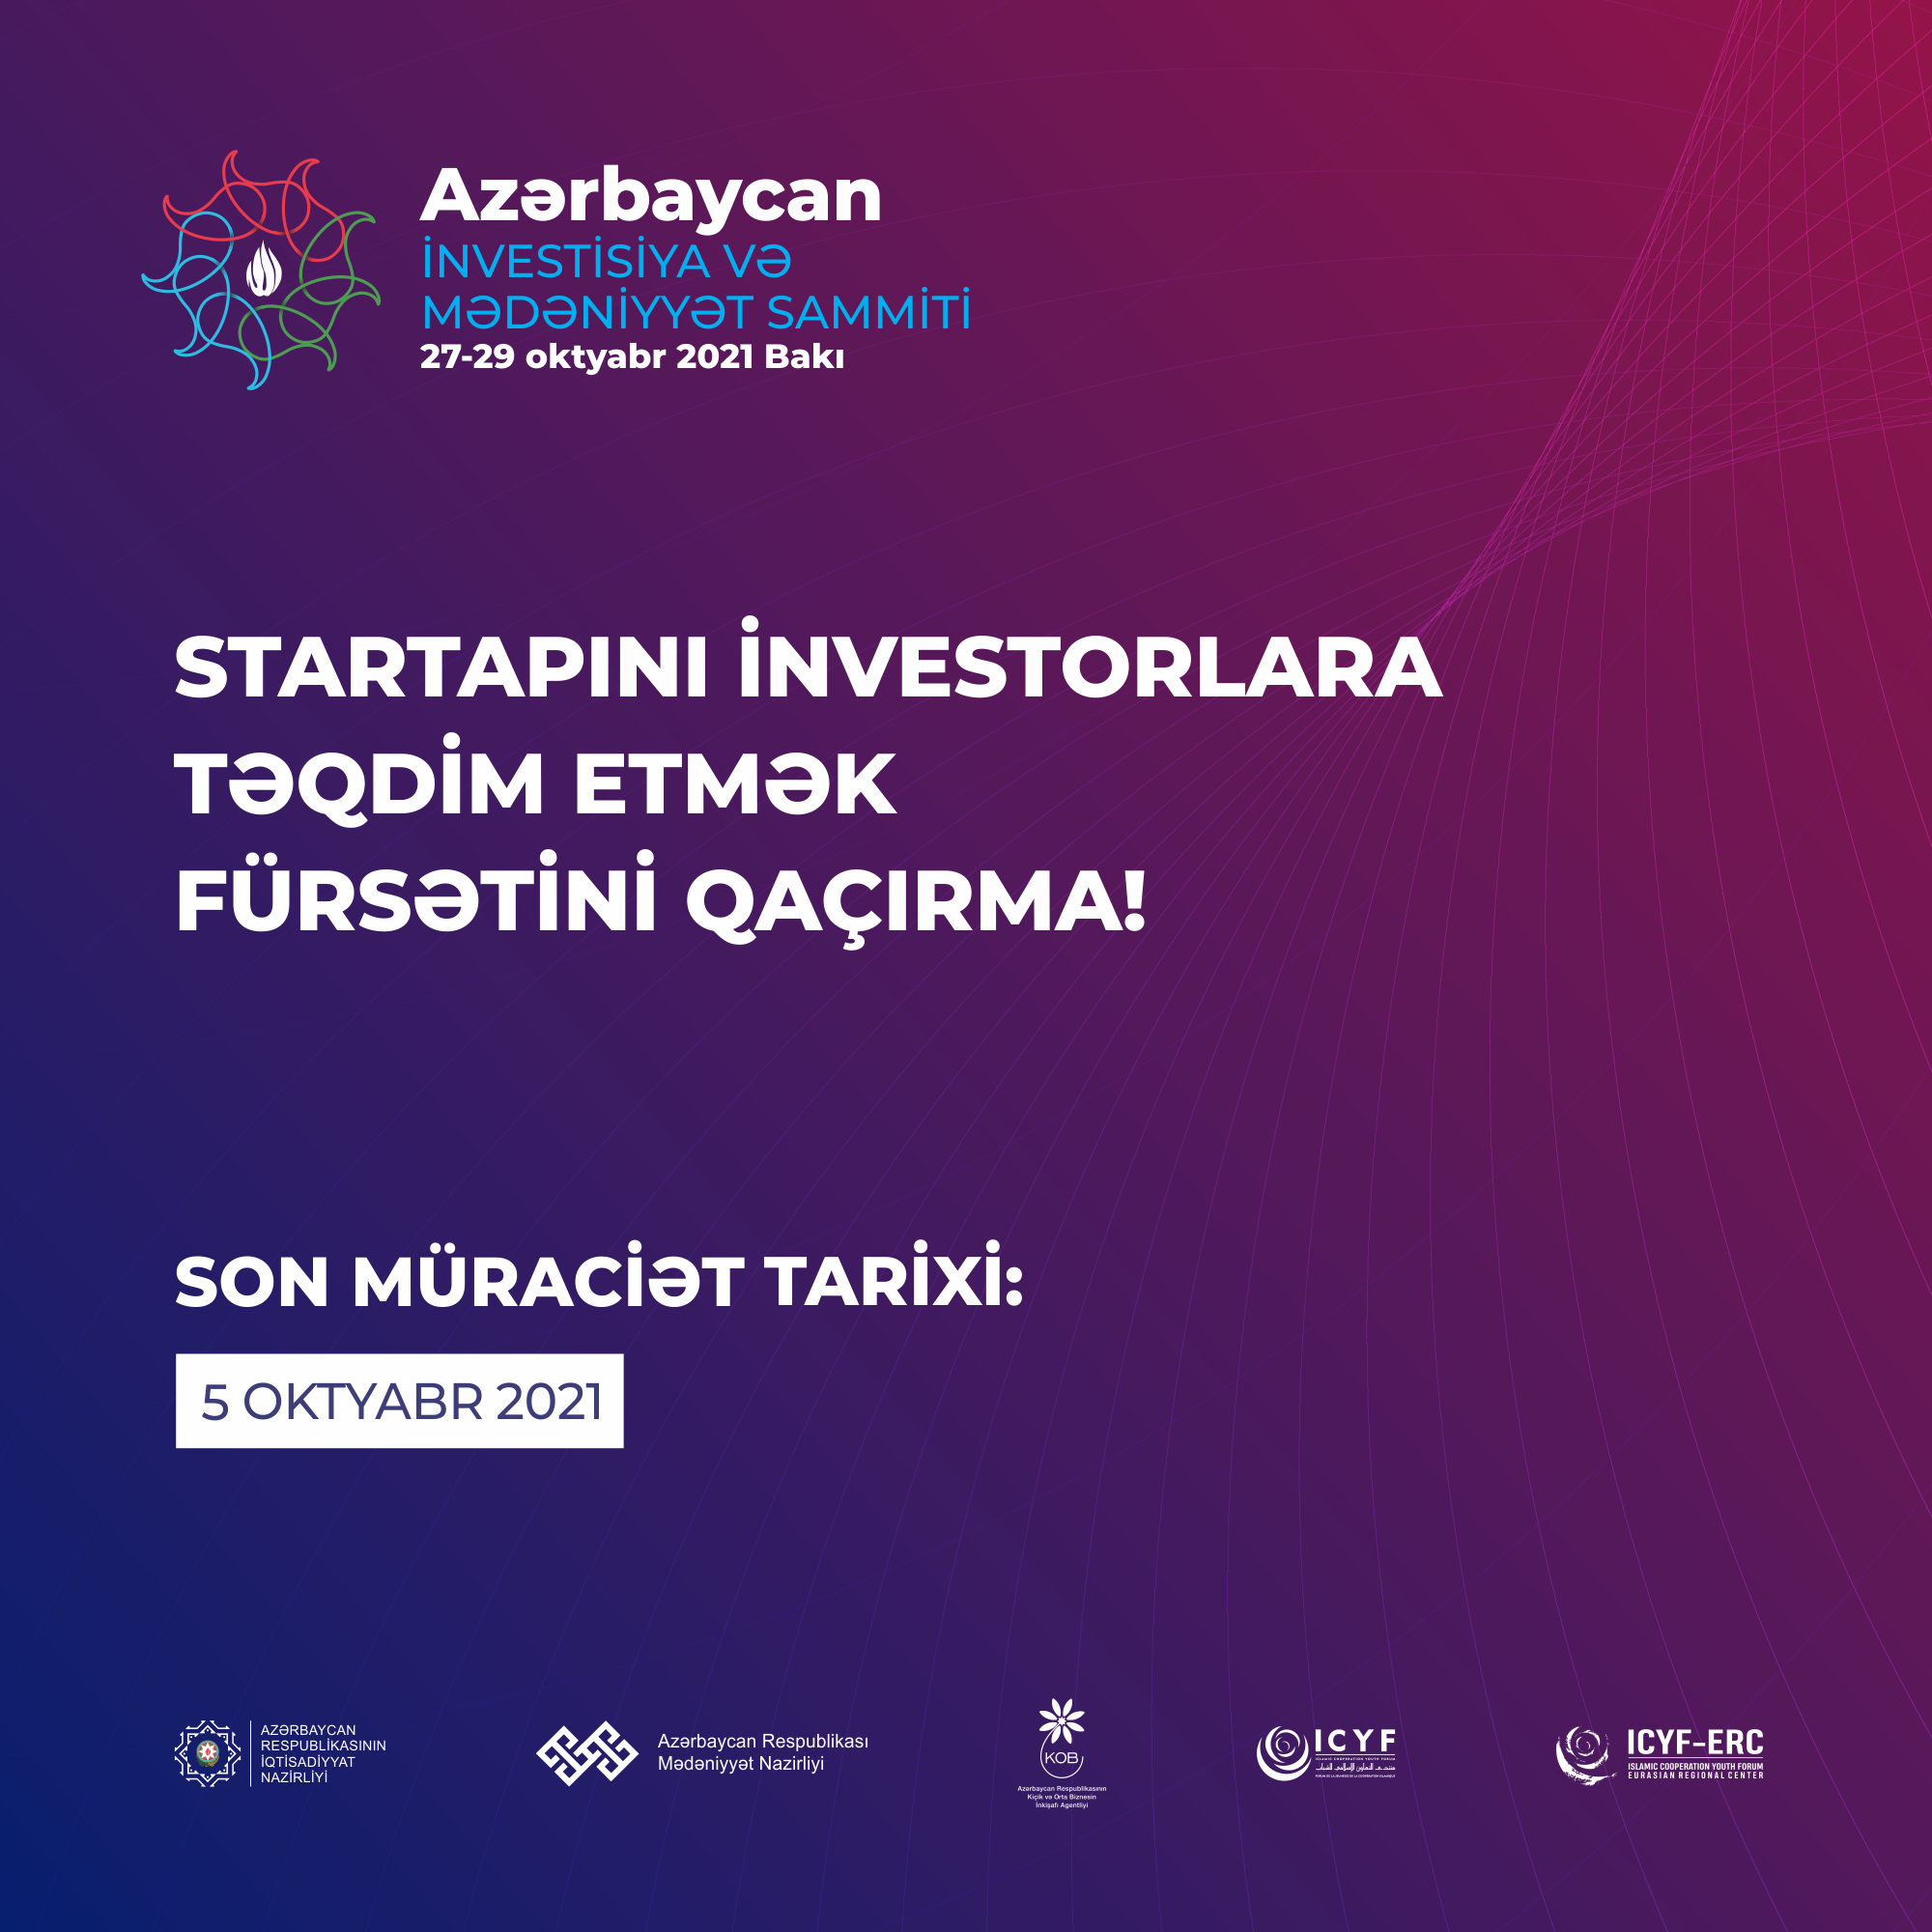 Azərbaycan İnvestisiya və Mədəniyyət Sammiti startaplara layihələrini investorlara təqdim etmək fürsəti verəcək 